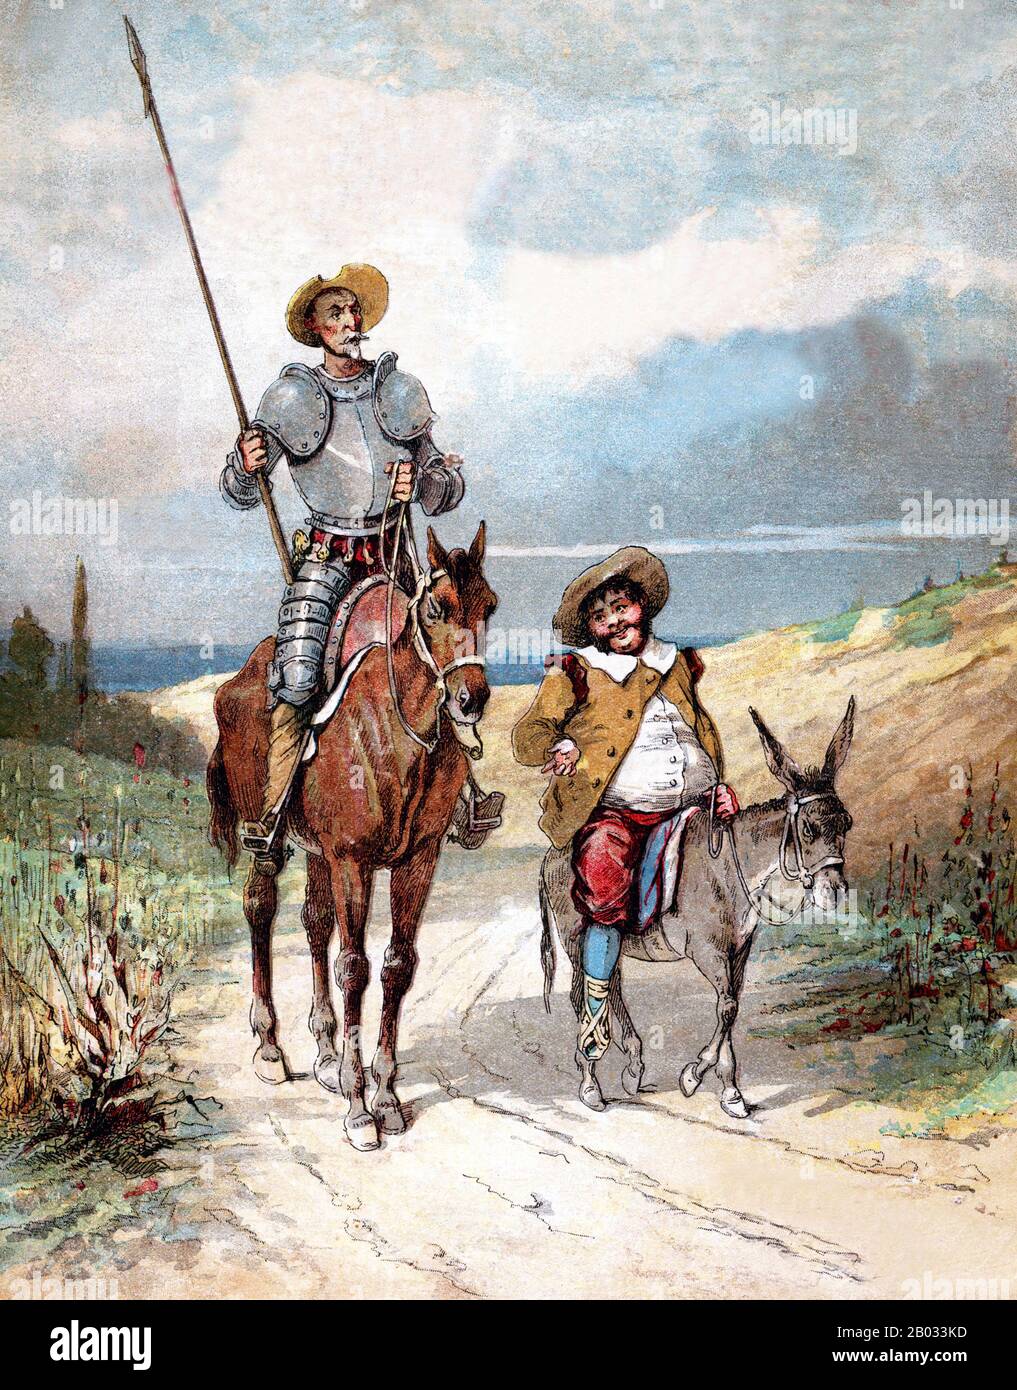 Don Quijote, es una novela española de Miguel de Cervantes Saavedra.  Publicado en dos volúmenes, en 1605 y 1615, Don Quijote es considerado una  de las obras literarias más influyentes de la